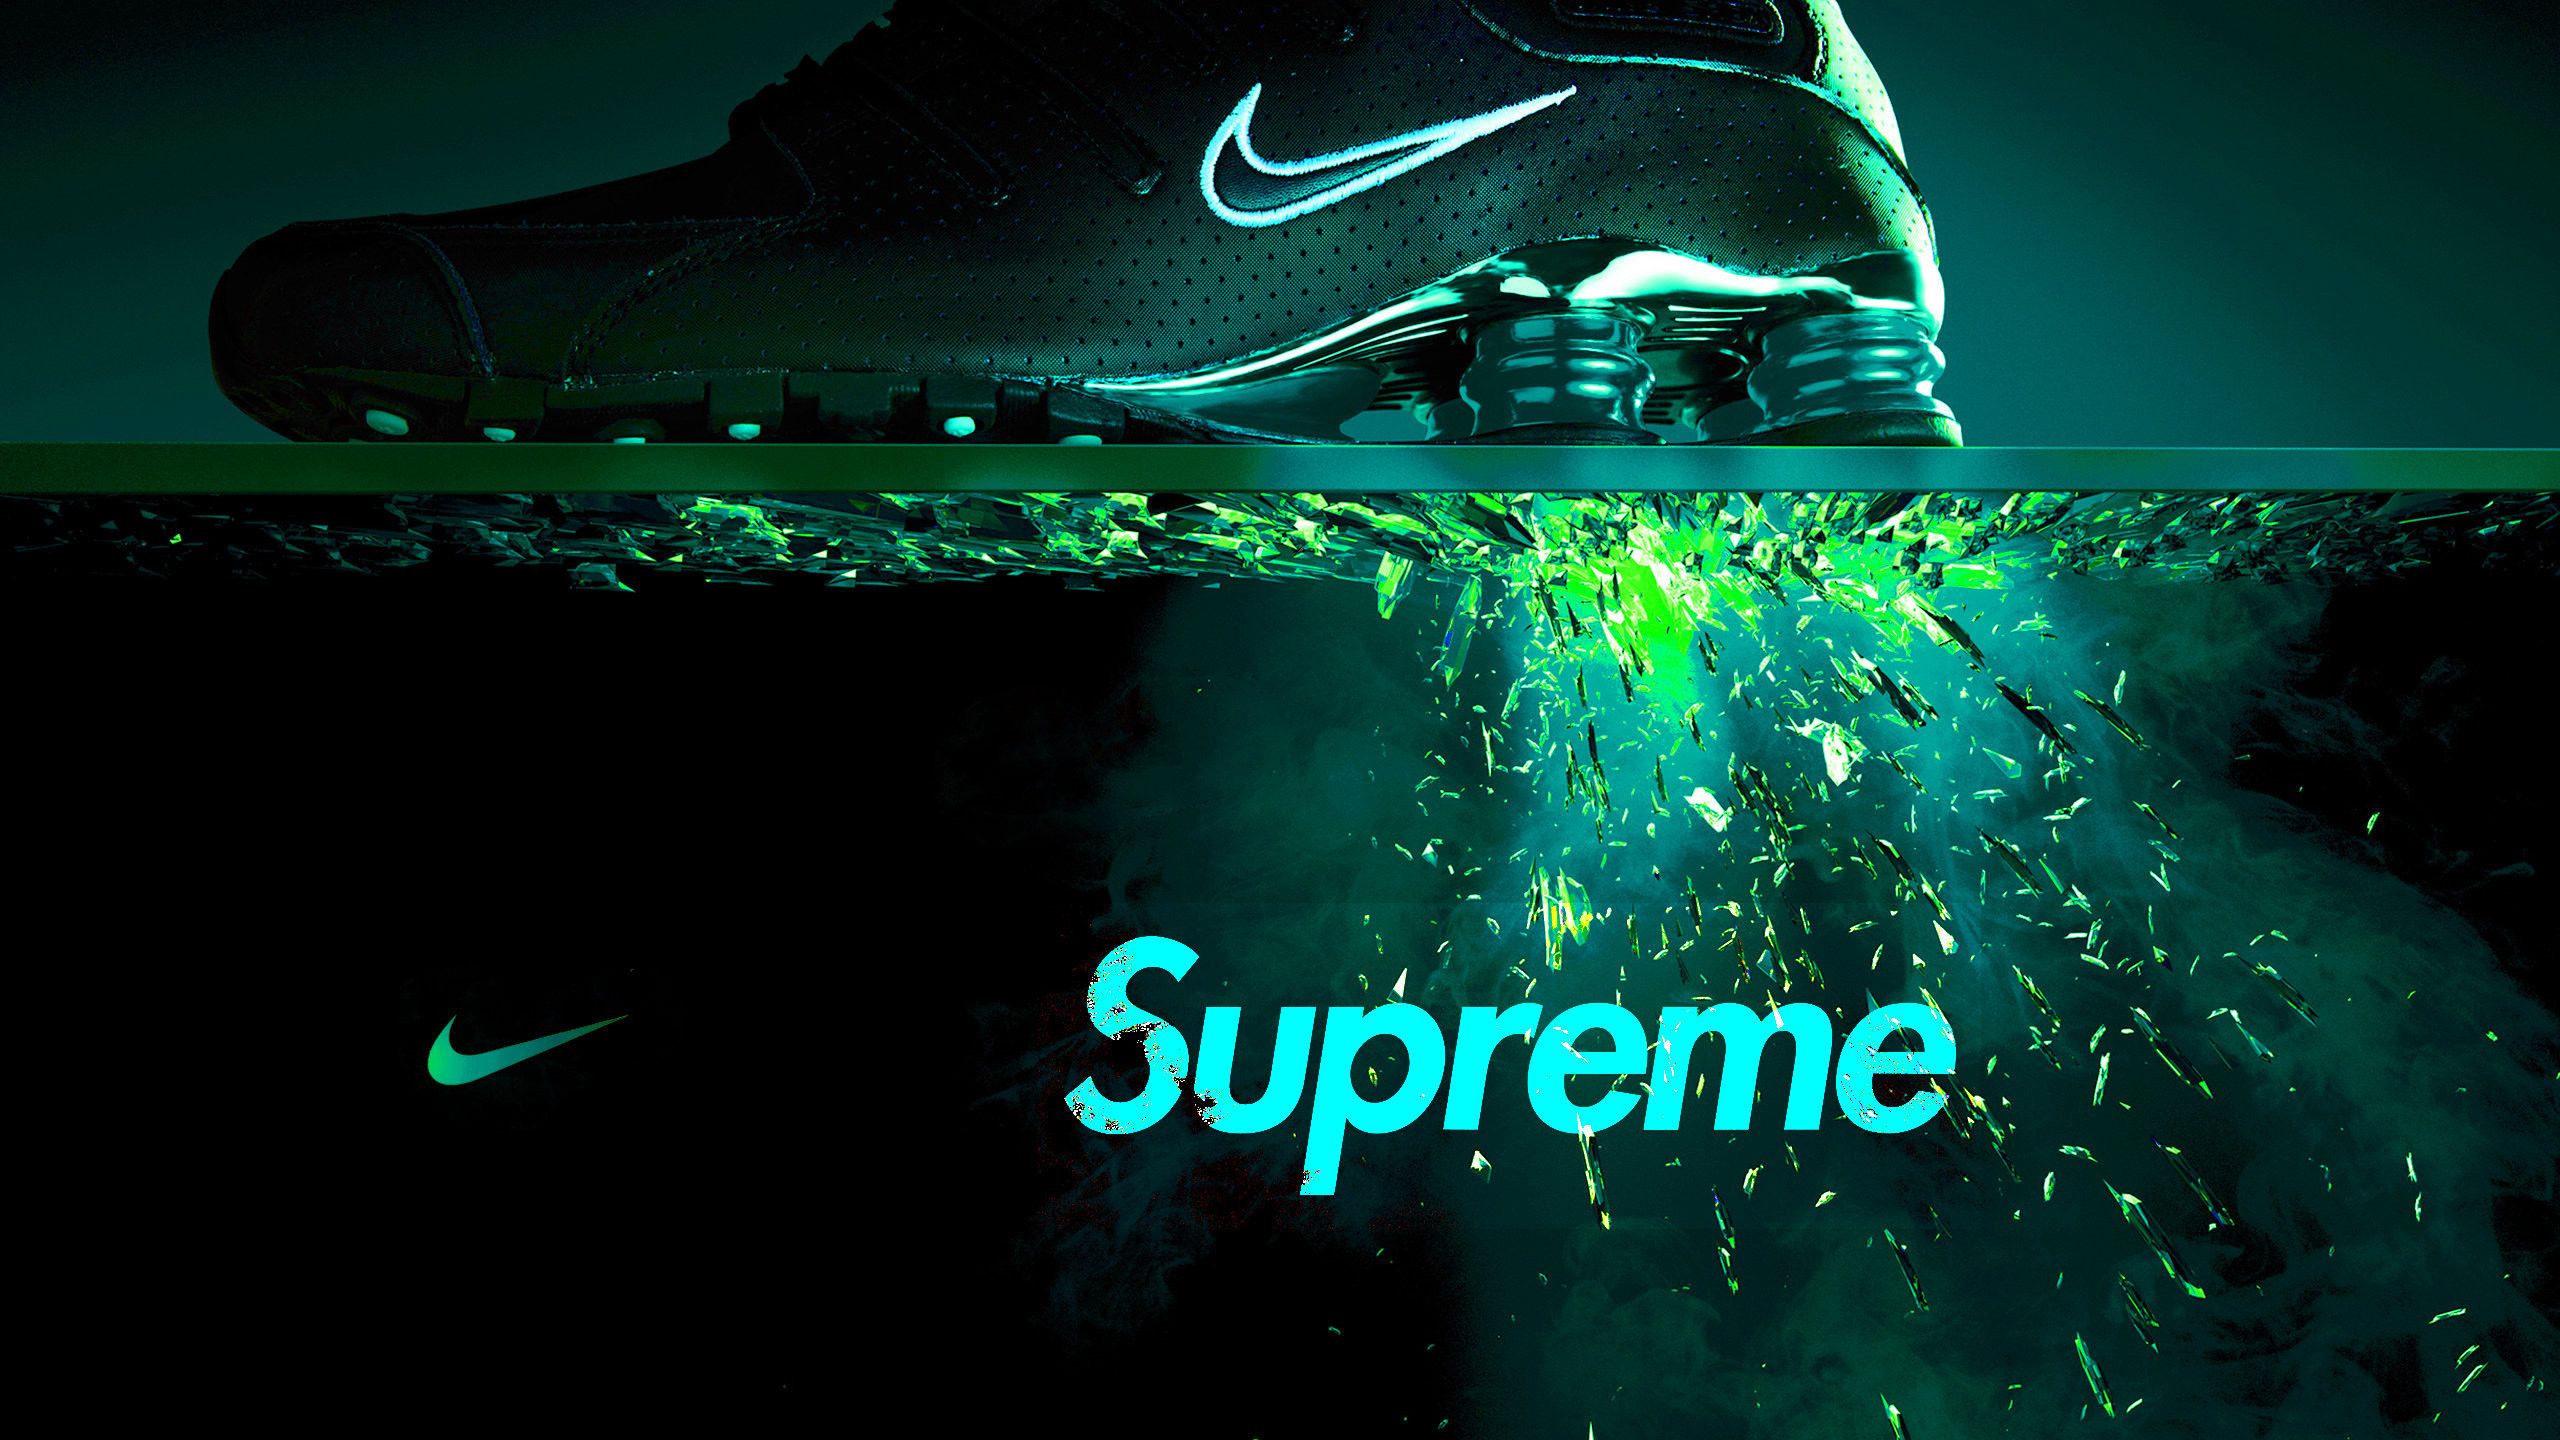 Màu xanh lá của Nike là sự lựa chọn tuyệt vời cho những ai muốn thể hiện sự năng động và cá tính. Hình ảnh nền Nike màu xanh backgroud sẽ khiến cho điện thoại của bạn trở nên thú vị, tạo ra một hiệu ứng độc đáo và rực rỡ cho người dùng. Hãy kiểm tra ngay để đem vẻ đẹp sáng tạo vào điện thoại của bạn!